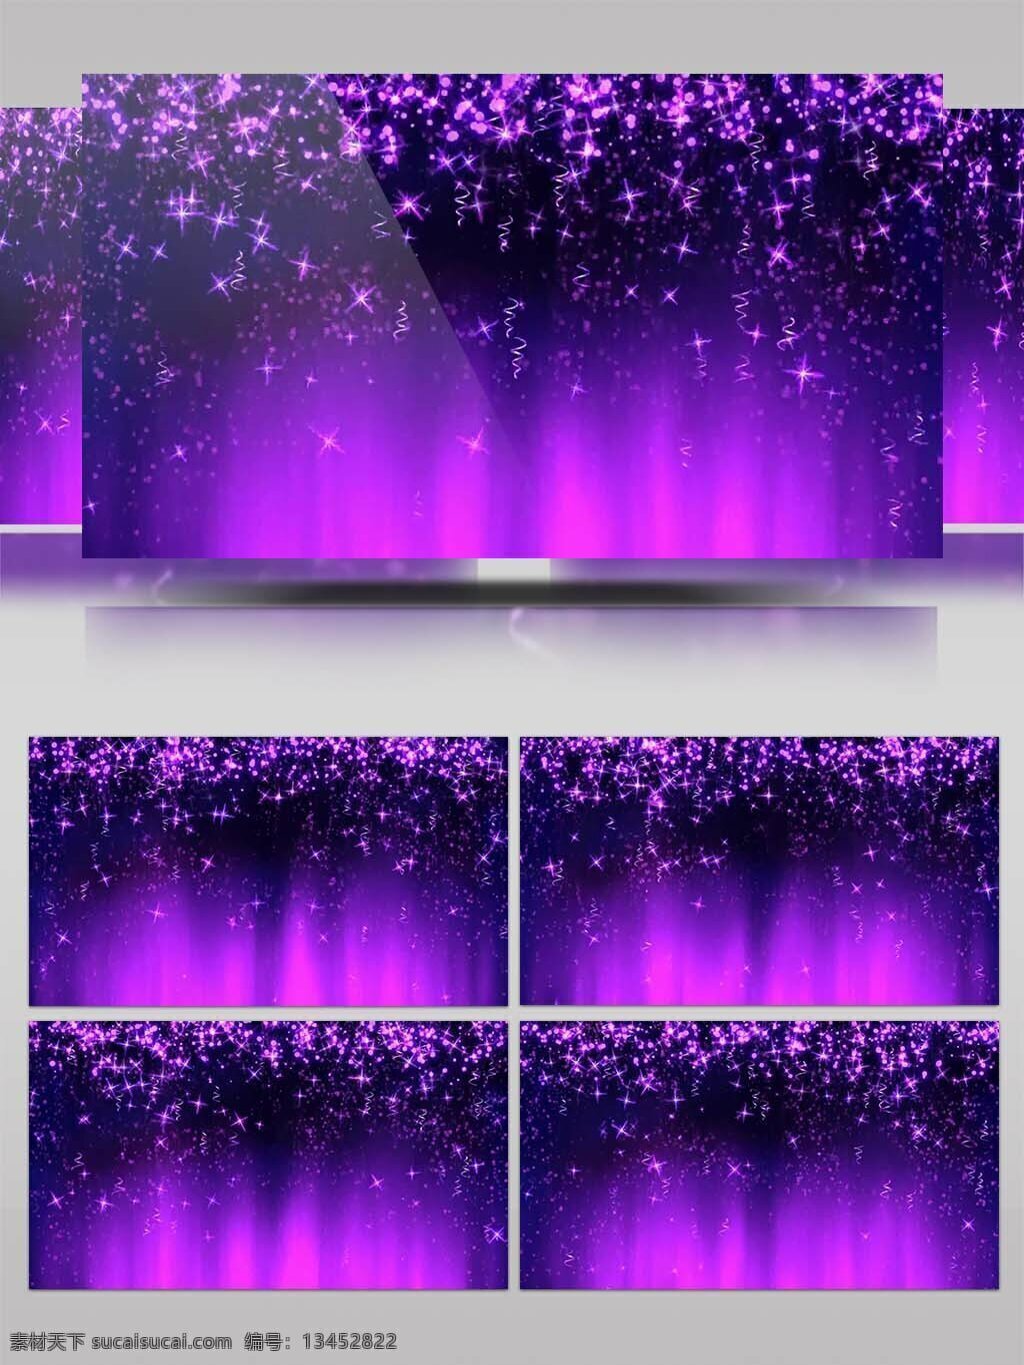 高清 紫色 绚丽 粒子 瀑布 下落 背景 浪漫 唯美 梦幻 舞台 视频 led素材 节日背景 紫色粒子 动态 晚会 特效